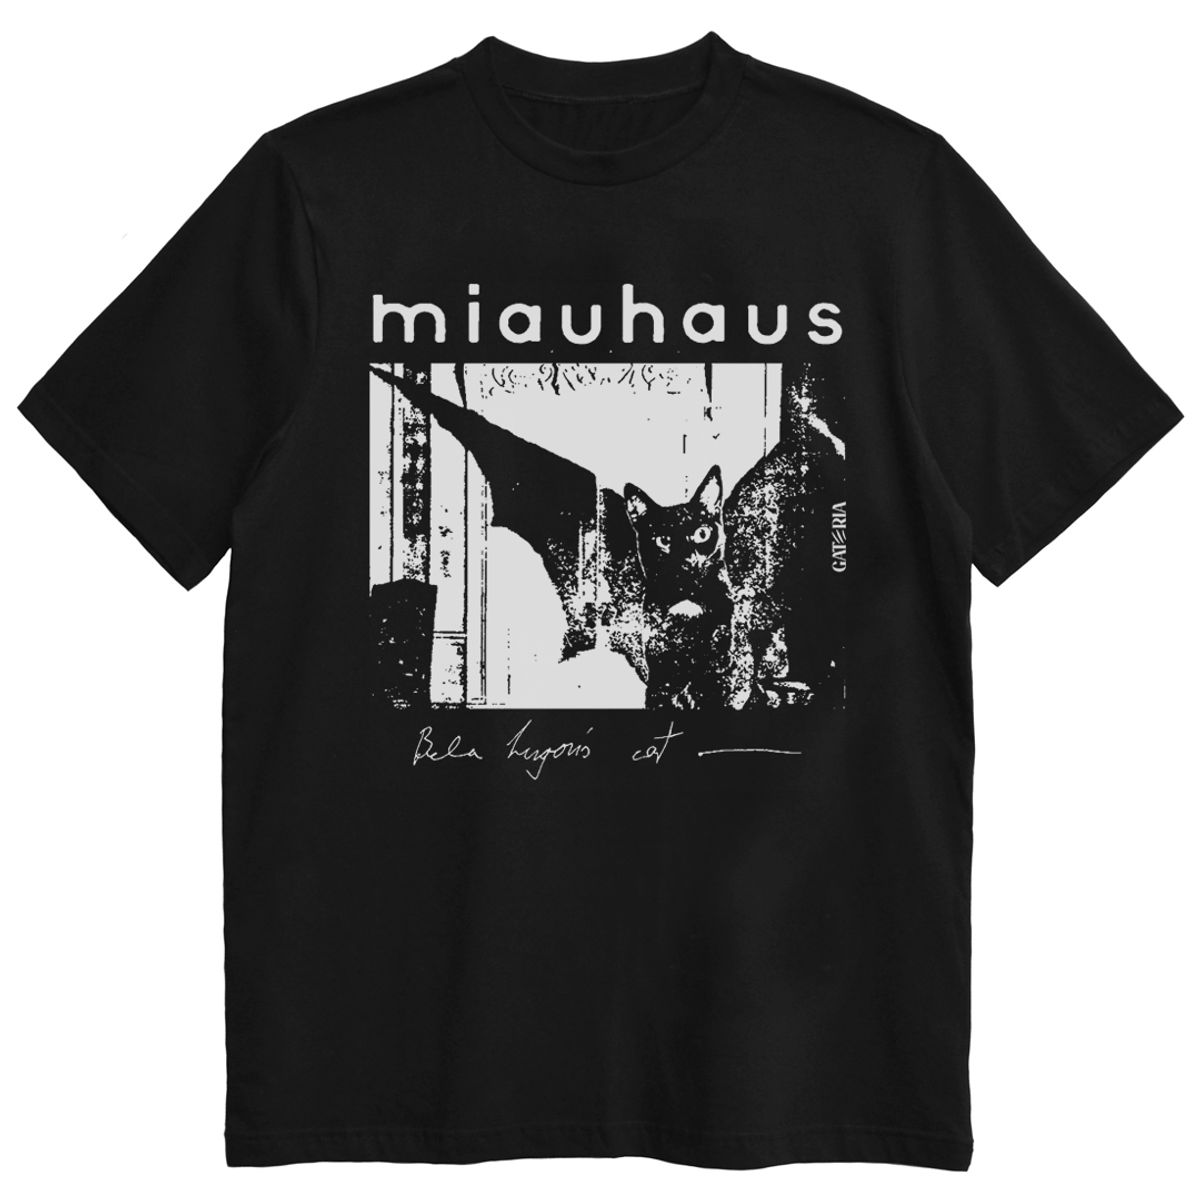 Nome do produto: Camiseta Bauhaus - Miauhaus - Preto